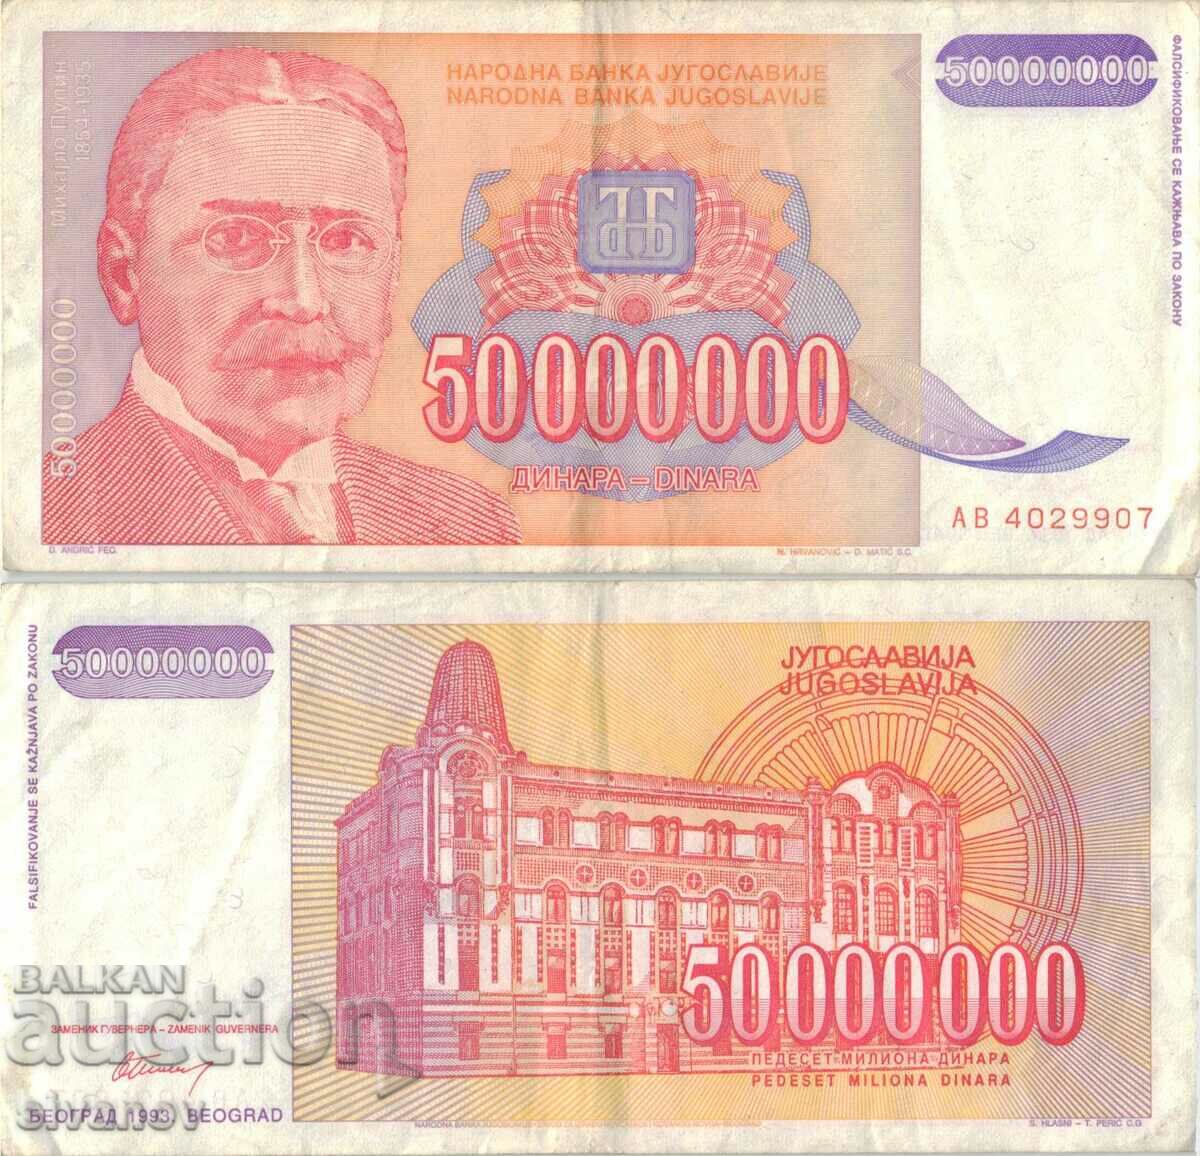 Yugoslavia 50,000,000 dinars 1993 #5069